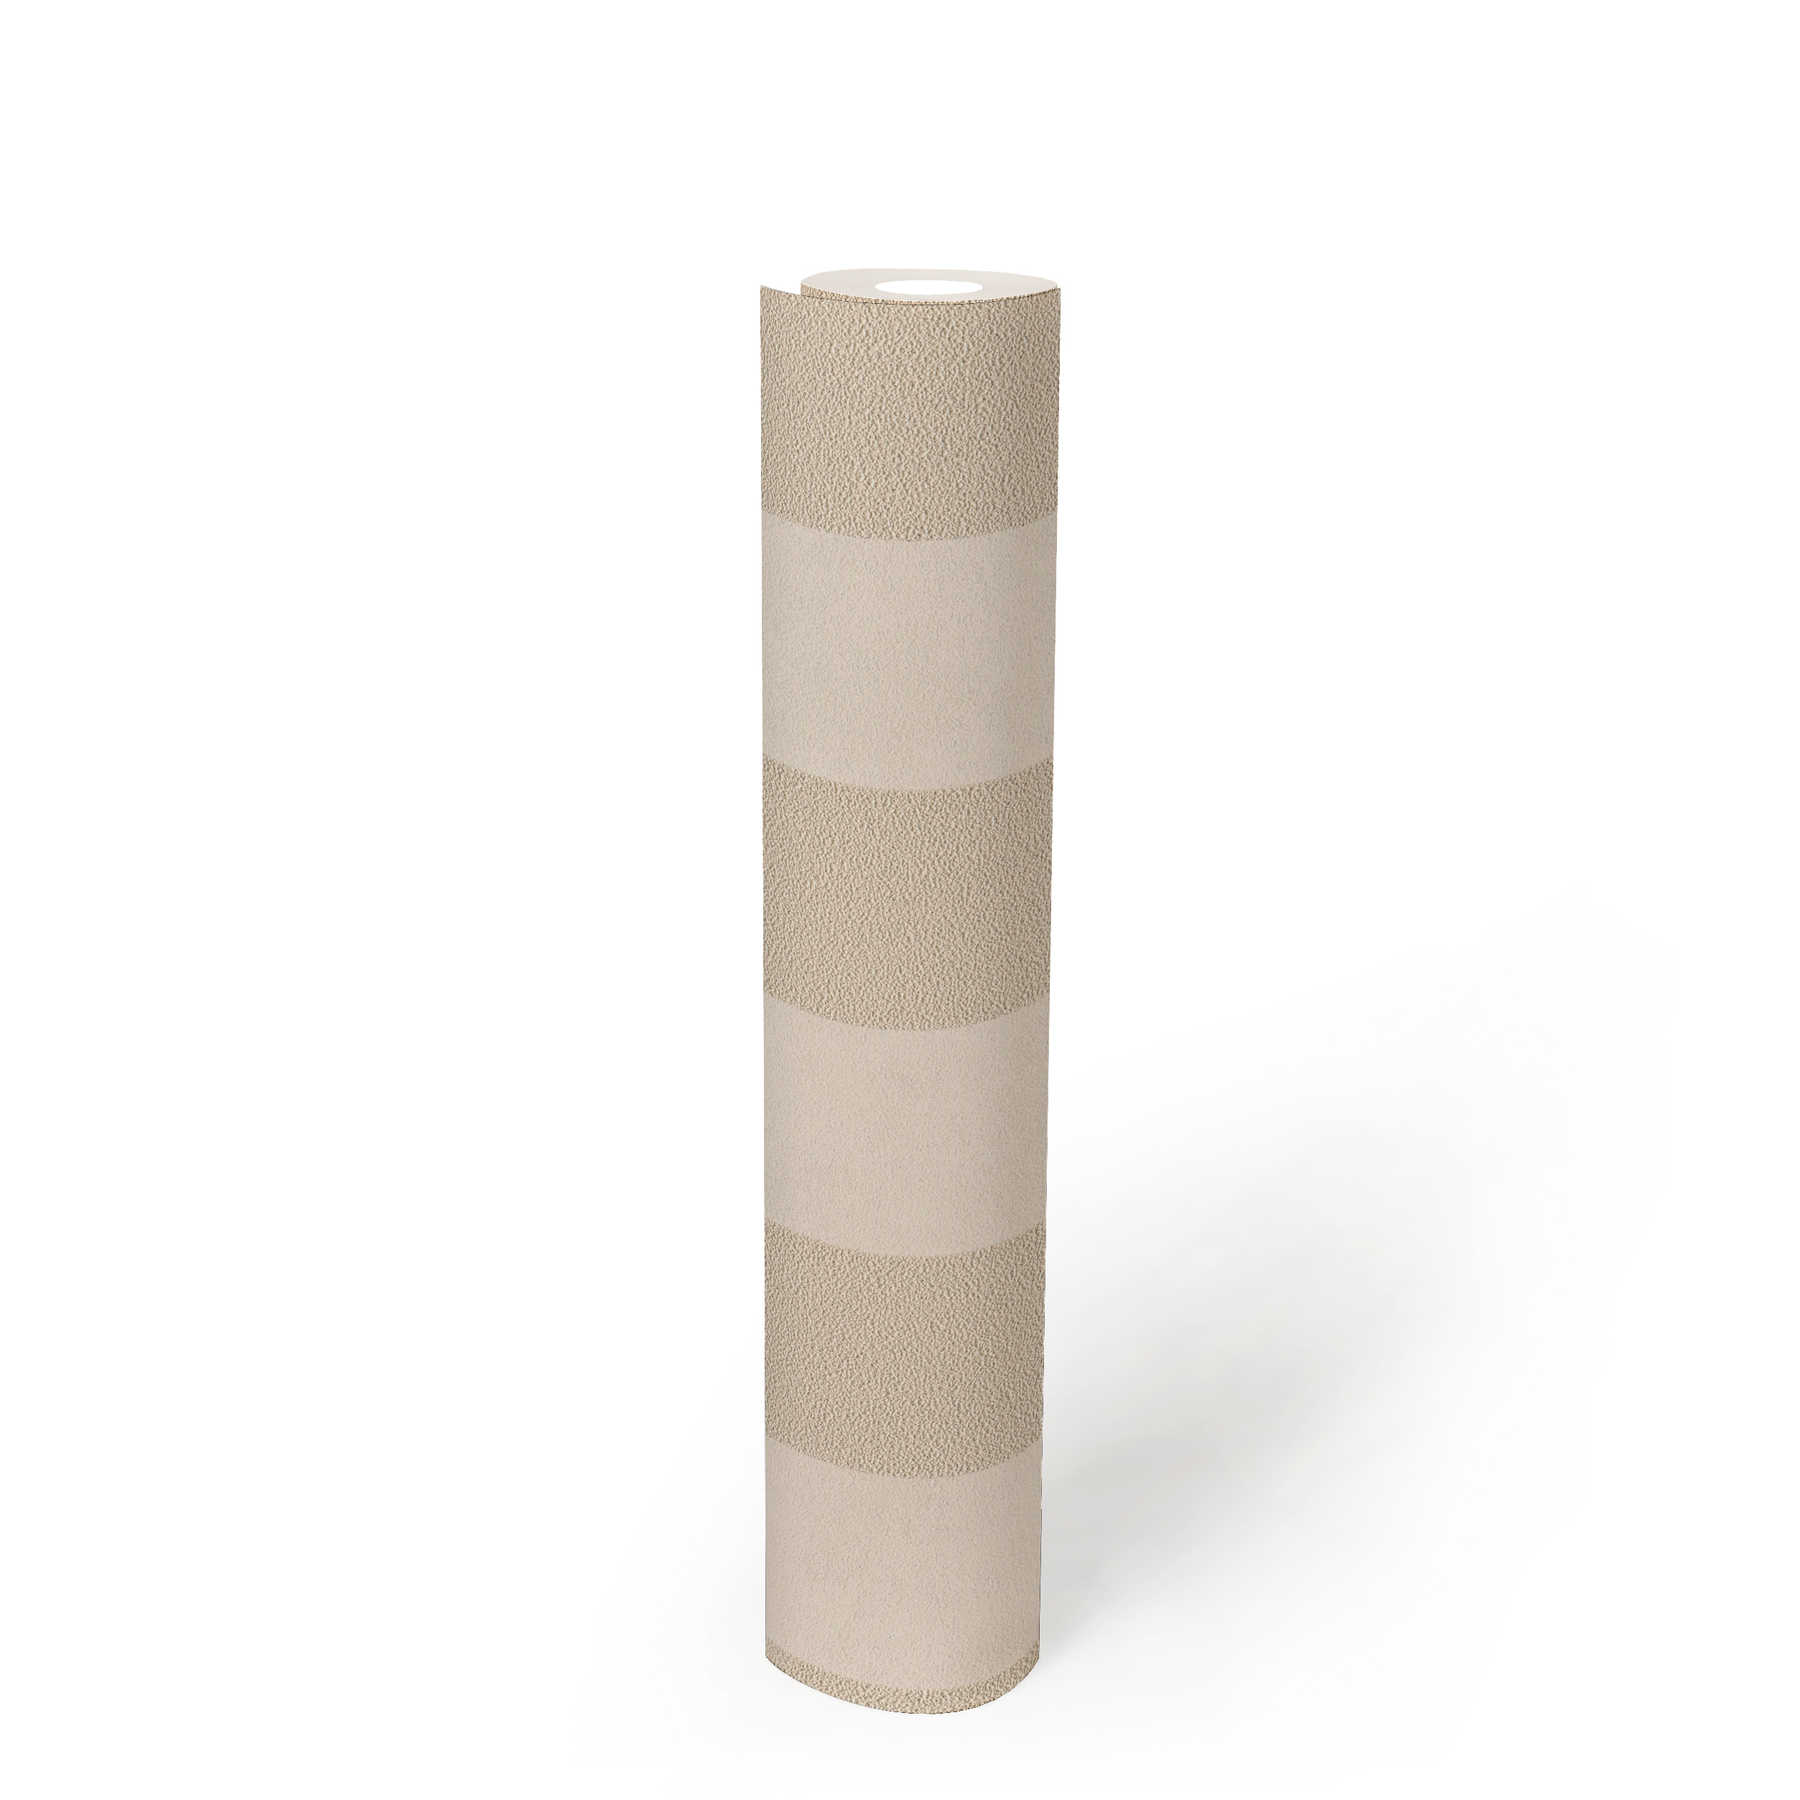             Blockstreifen-Tapete mit Farb- und Strukturmuster – Beige, Gold, Creme
        